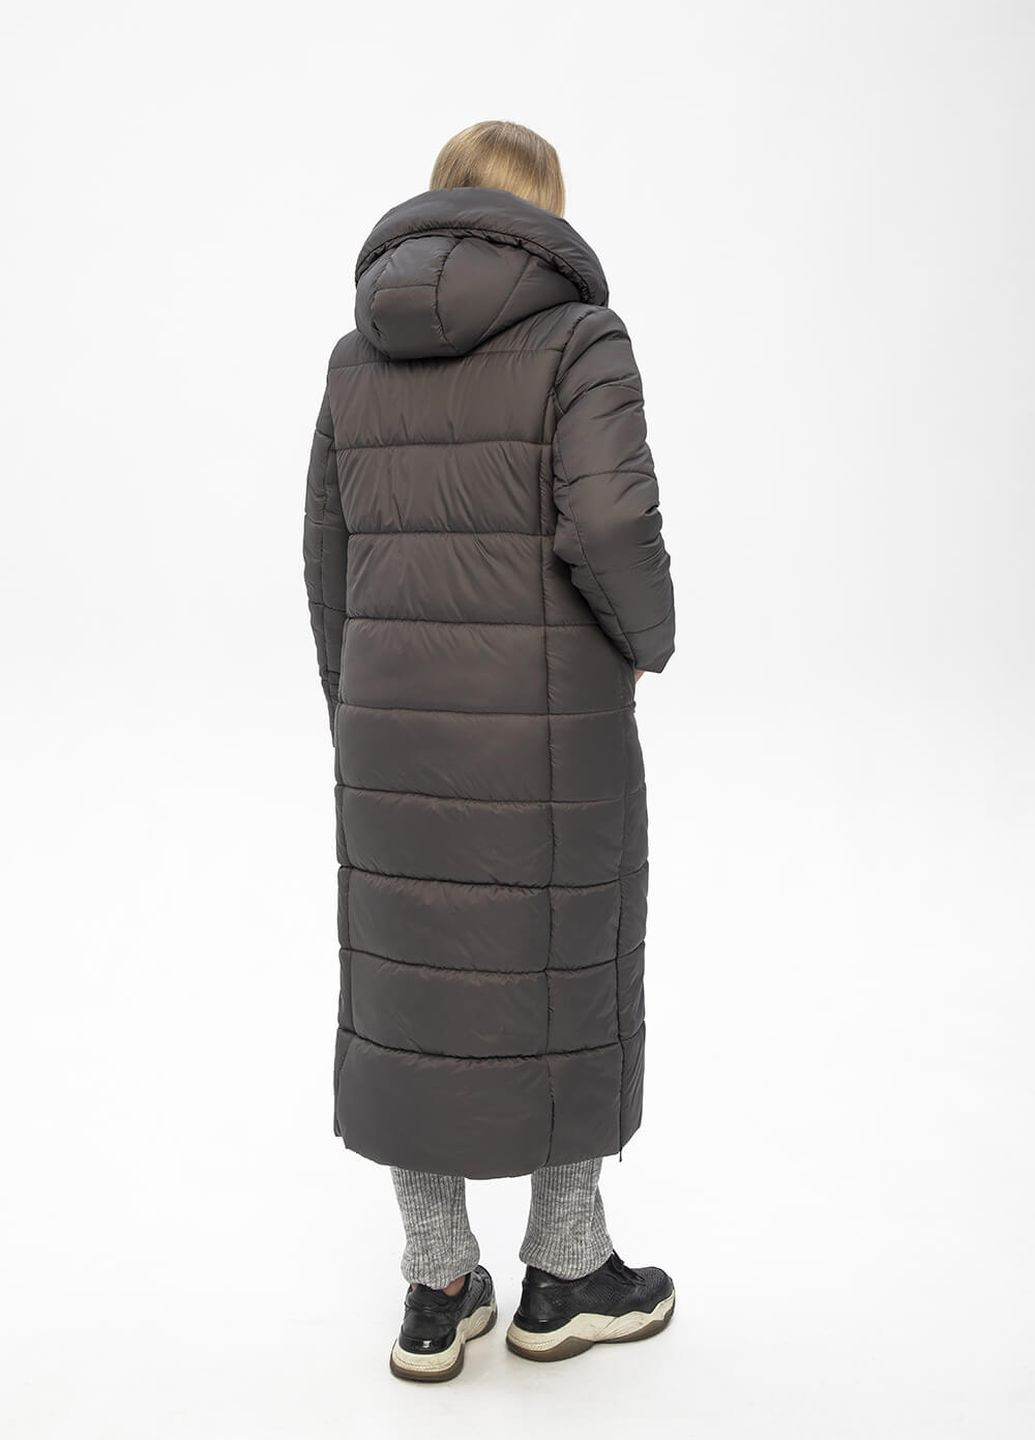 Сіра зимня куртка-пальто з капюшоном агата MioRichi